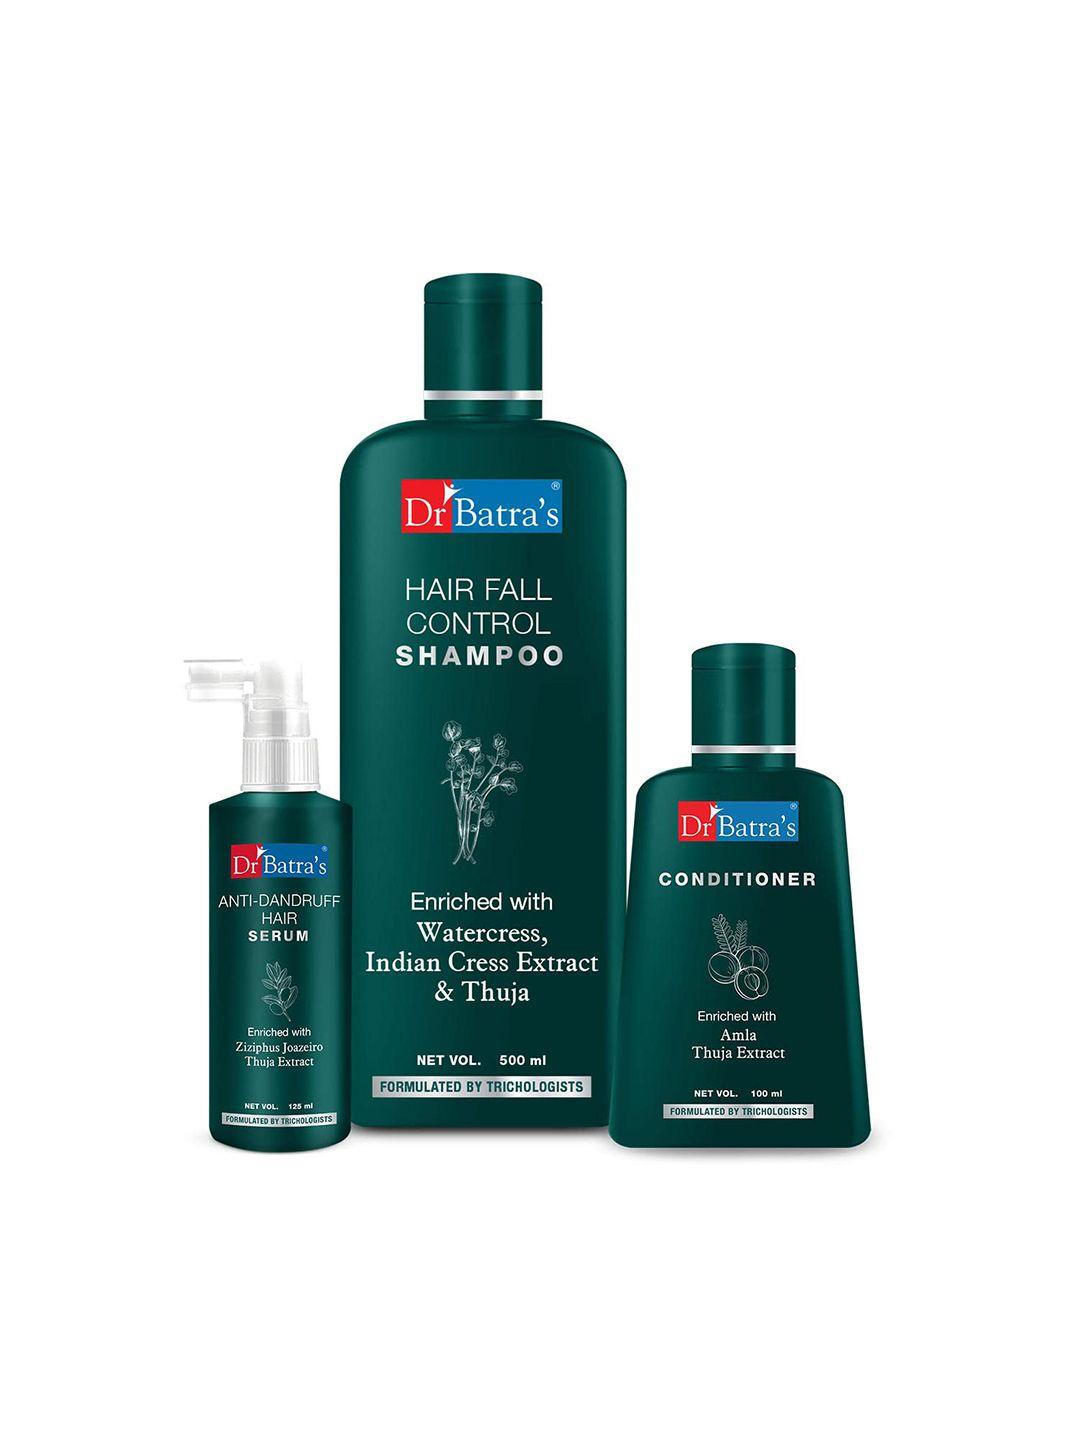 dr. batras anti dandruff hair serum + conditioner 100ml + hair fall control shampoo 500ml